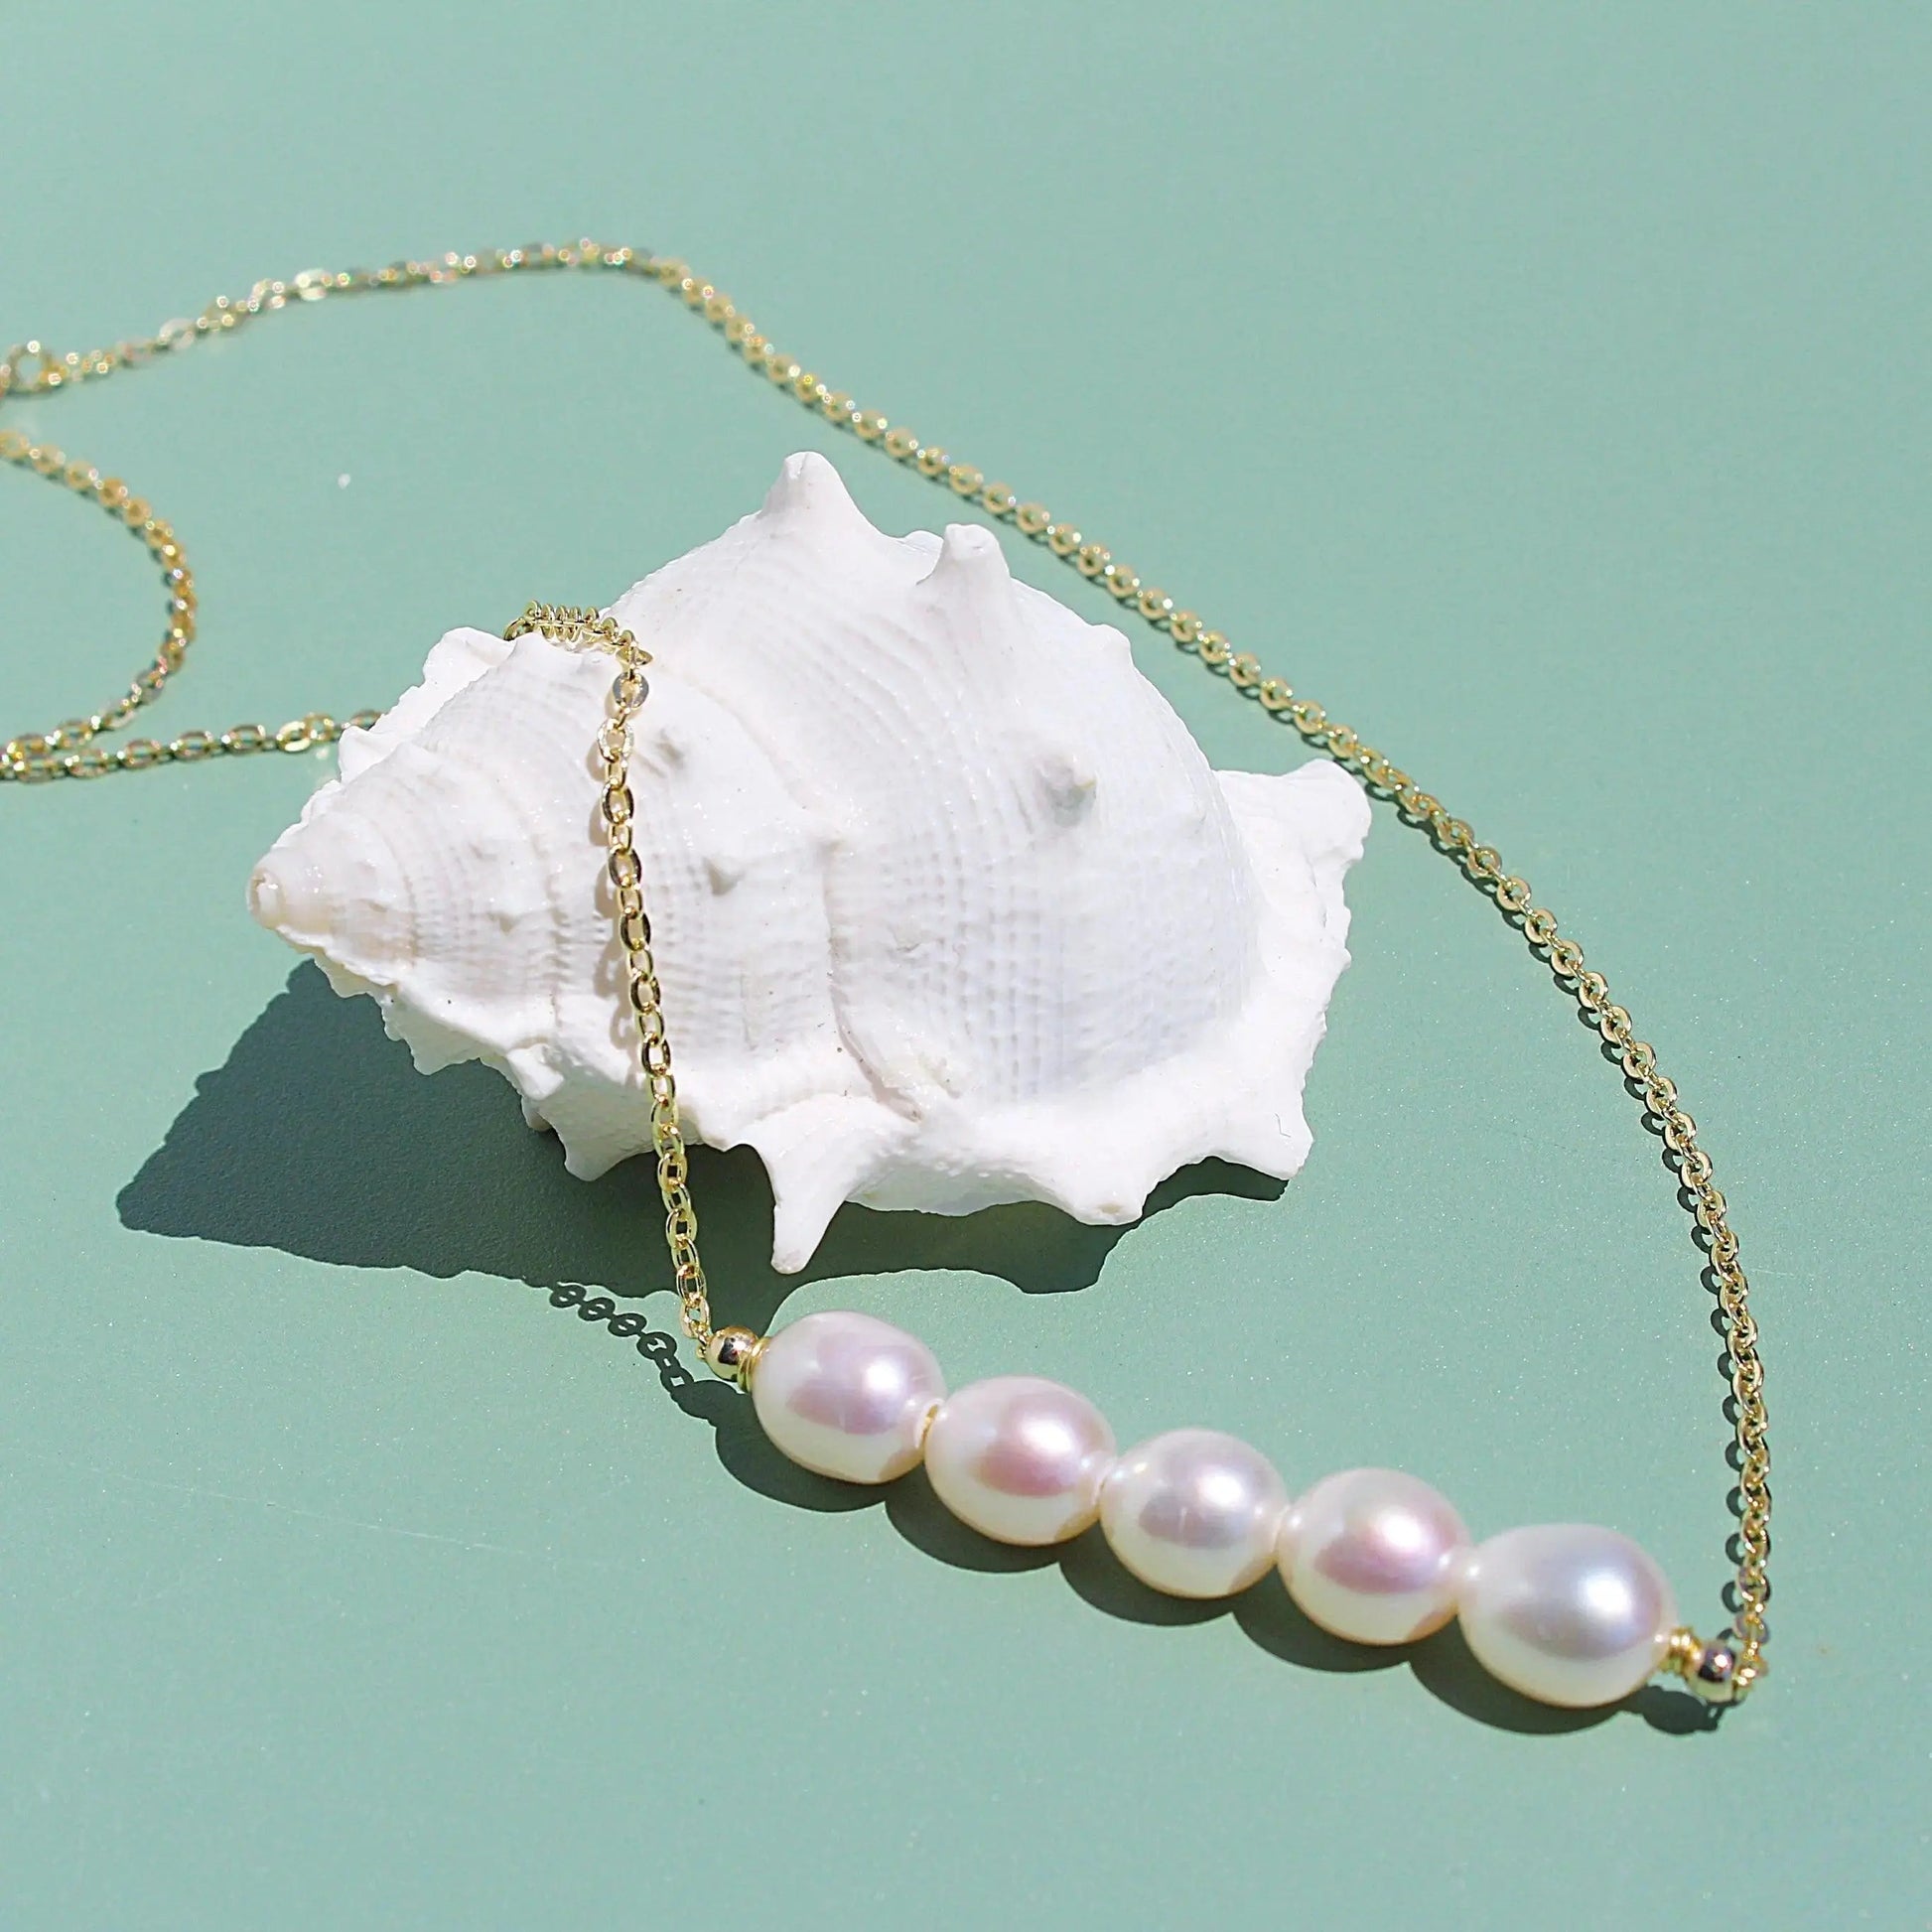 Elegante Perlenbalken JK Jewelry & Accessories